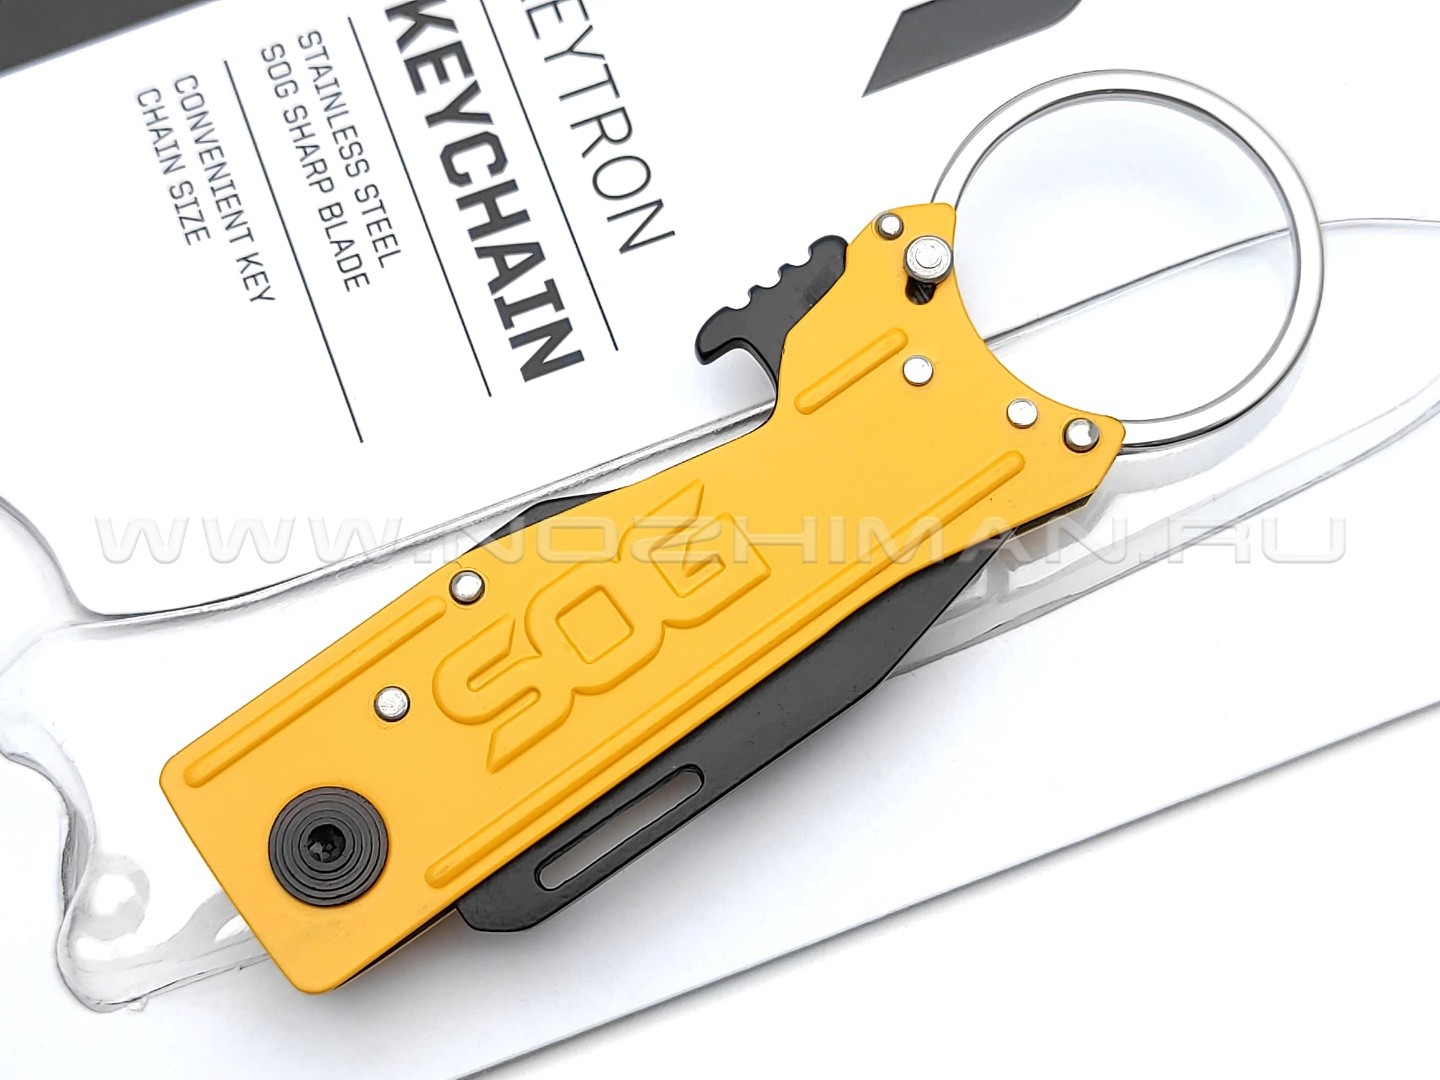 Нож SOG KeyTron Yellow KT1005 сталь 5Cr15MoV рукоять Stainless steel